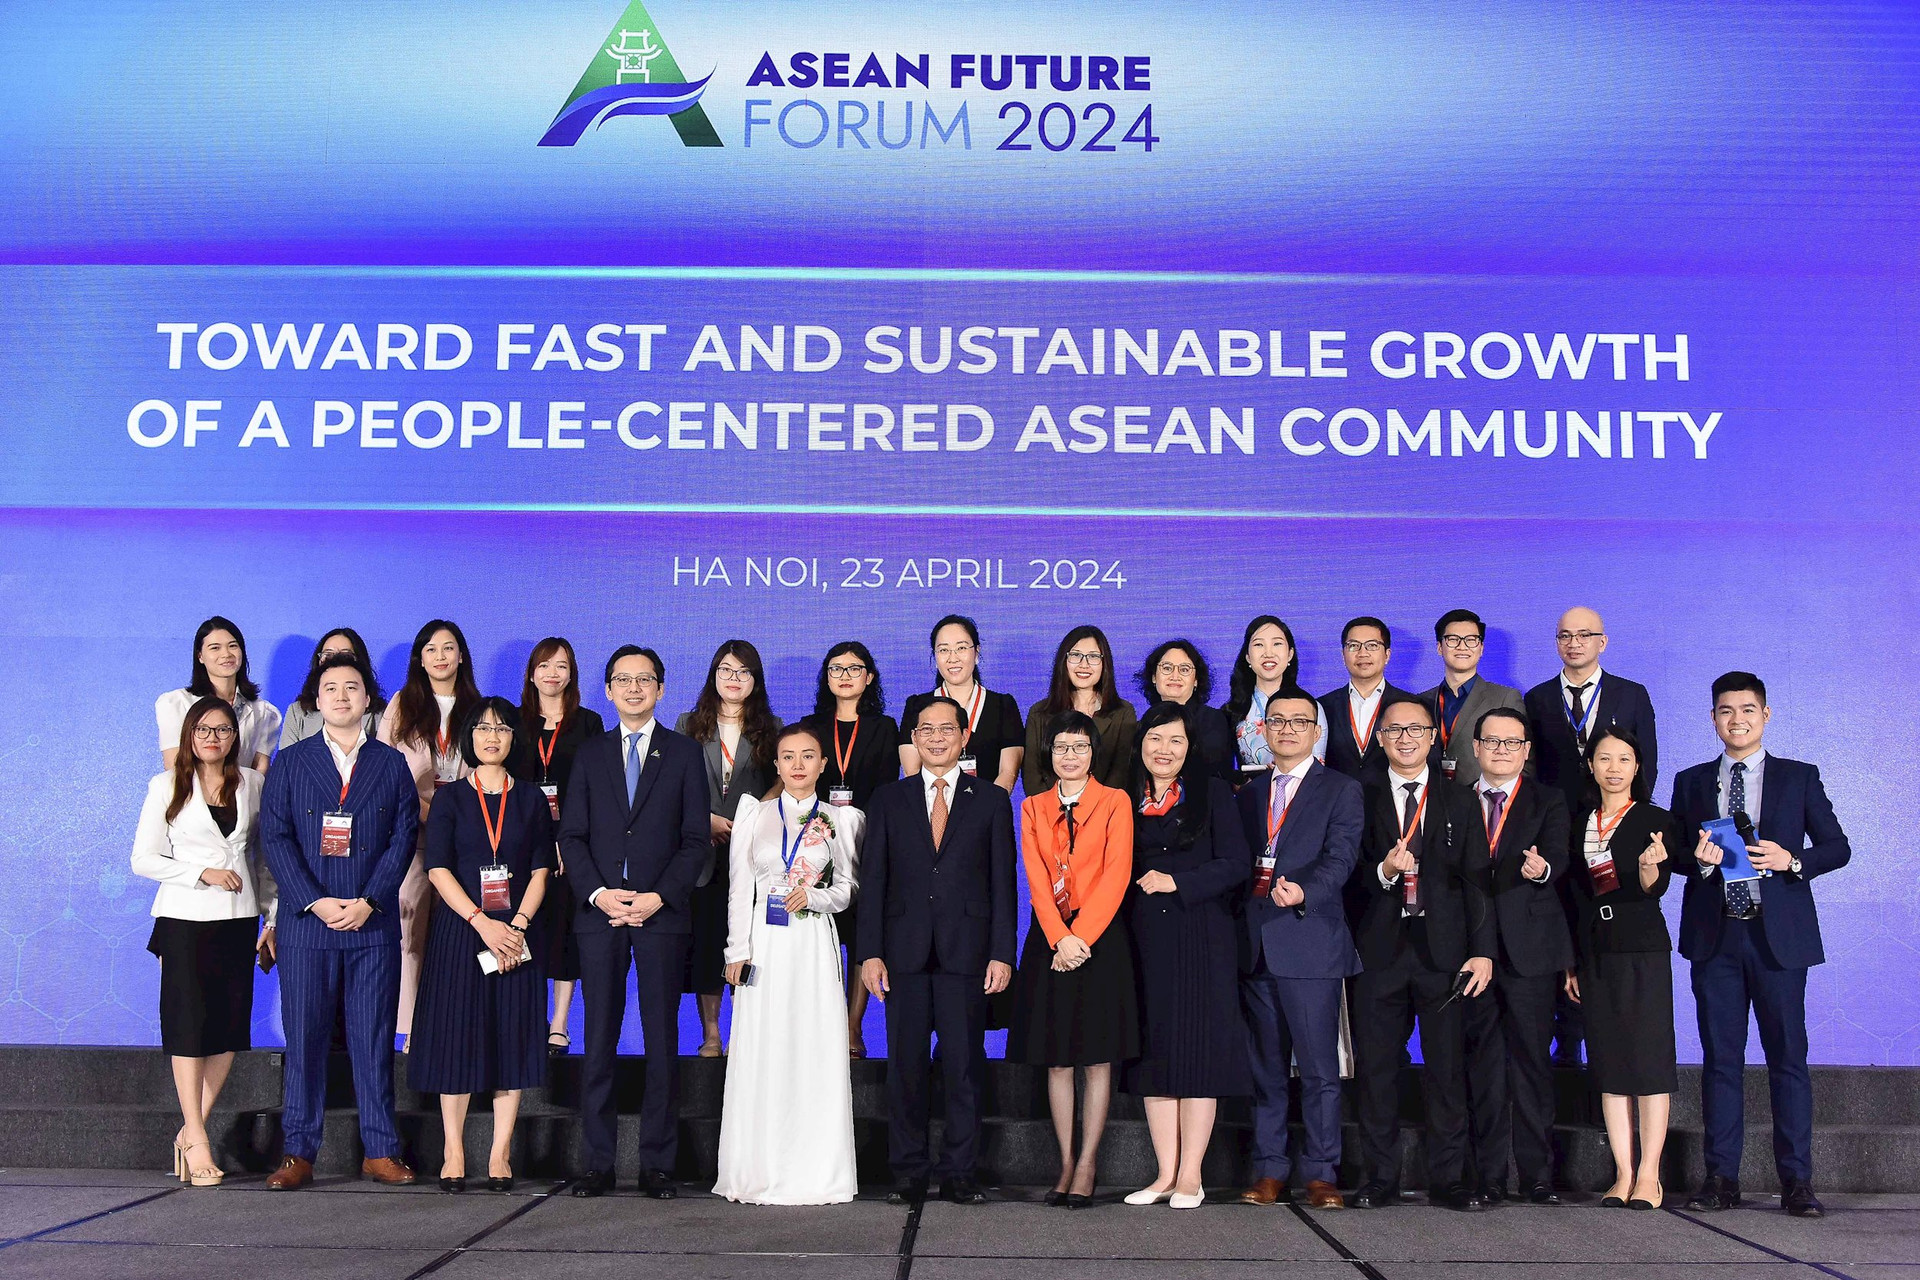 Mặc dù lần đầu tiên được tổ chức nhưng Diễn đàn Tương lai ASEAN đã nhận được sự quan tâm, hưởng ứng rất rộng rãi và ở cấp cao của các giới ở khu vực ASEAN và các nước đối tác.